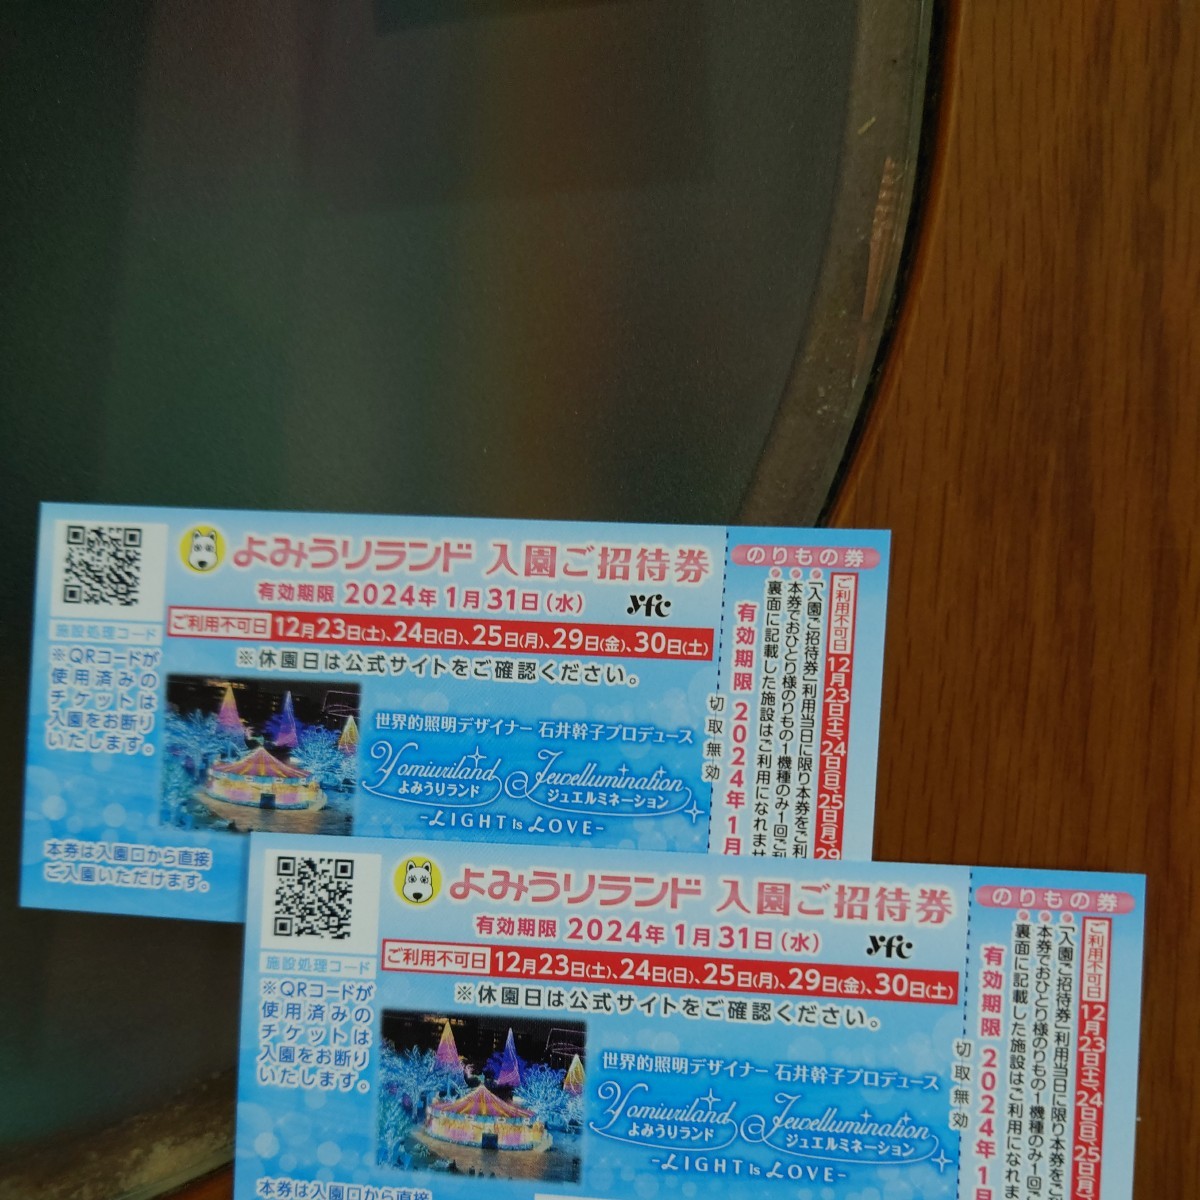 ★★よみうりランド入園招待券 2枚セット 有効期限24年1月31日★★_画像1